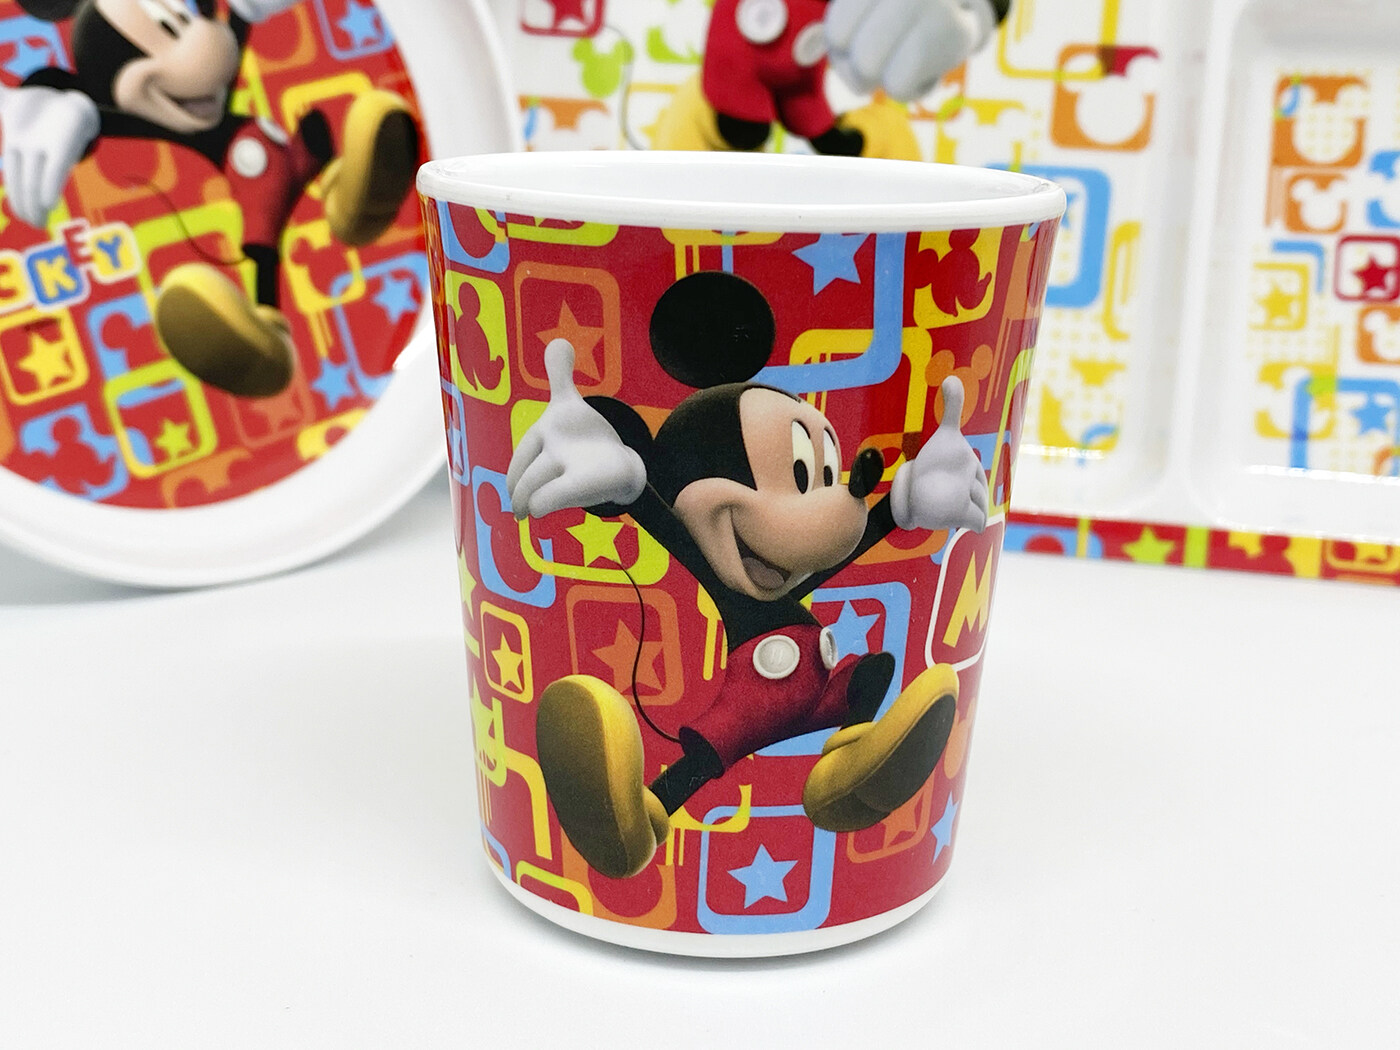 [ขายแยกชิ้น] จานเมลามีน ช้อนส้อมเด็ก ถาดหลุม ถ้วยน้ำเด็ก Disney Mickey Mouse มิกกี้-ฟันแทซ ศรีไทยซุปเปอร์แวร์ / 1 ชิ้น ; items sell SEPERATELY